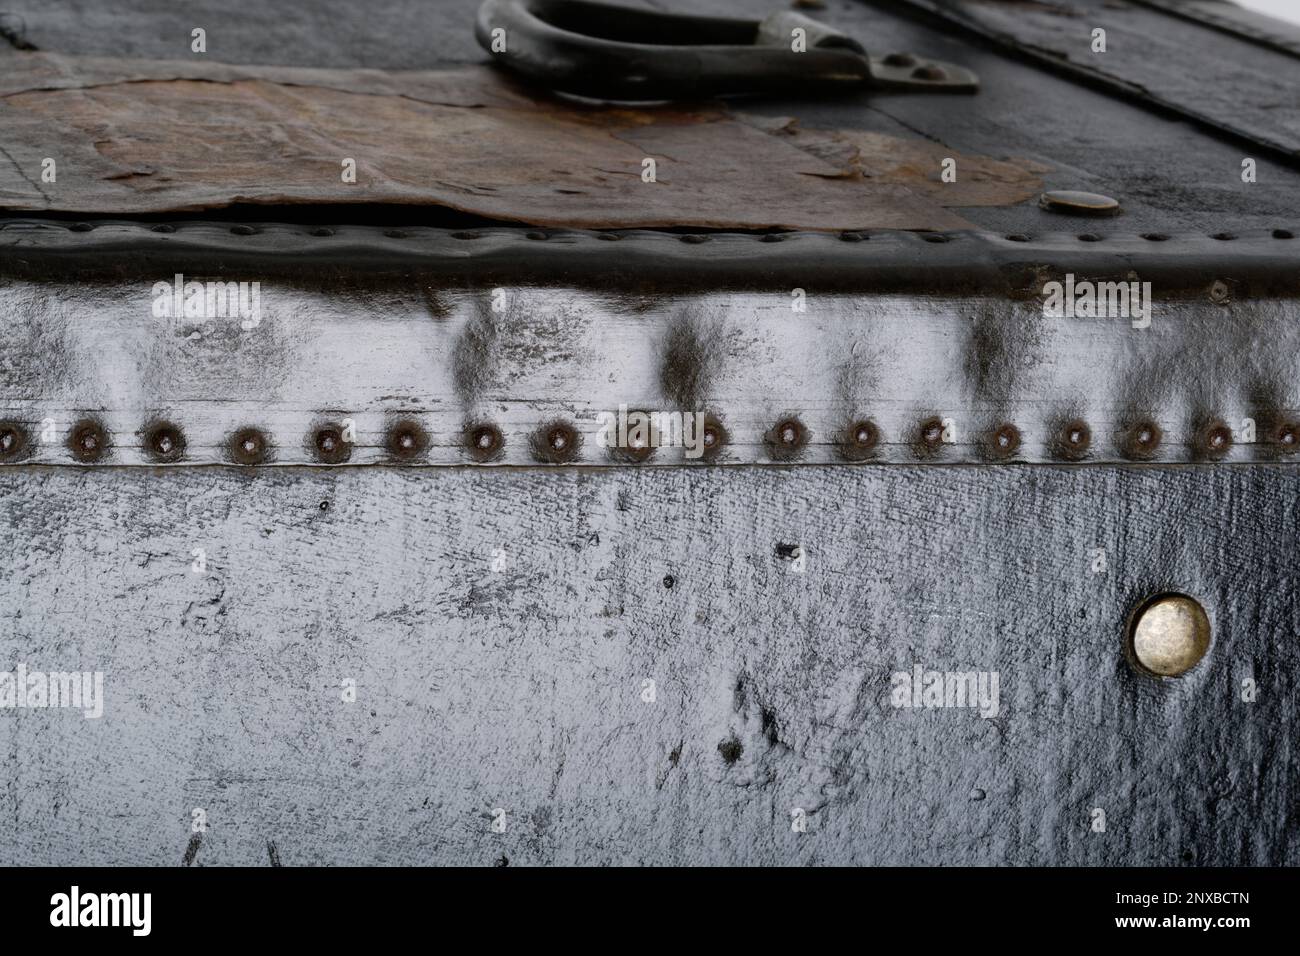 Gros plan sur des photos d'un coffre en bois à l'ancienne. Un coffre noir avec des coins renforcés en métal et des bords en cuir. Image d'arrière-plan. Banque D'Images